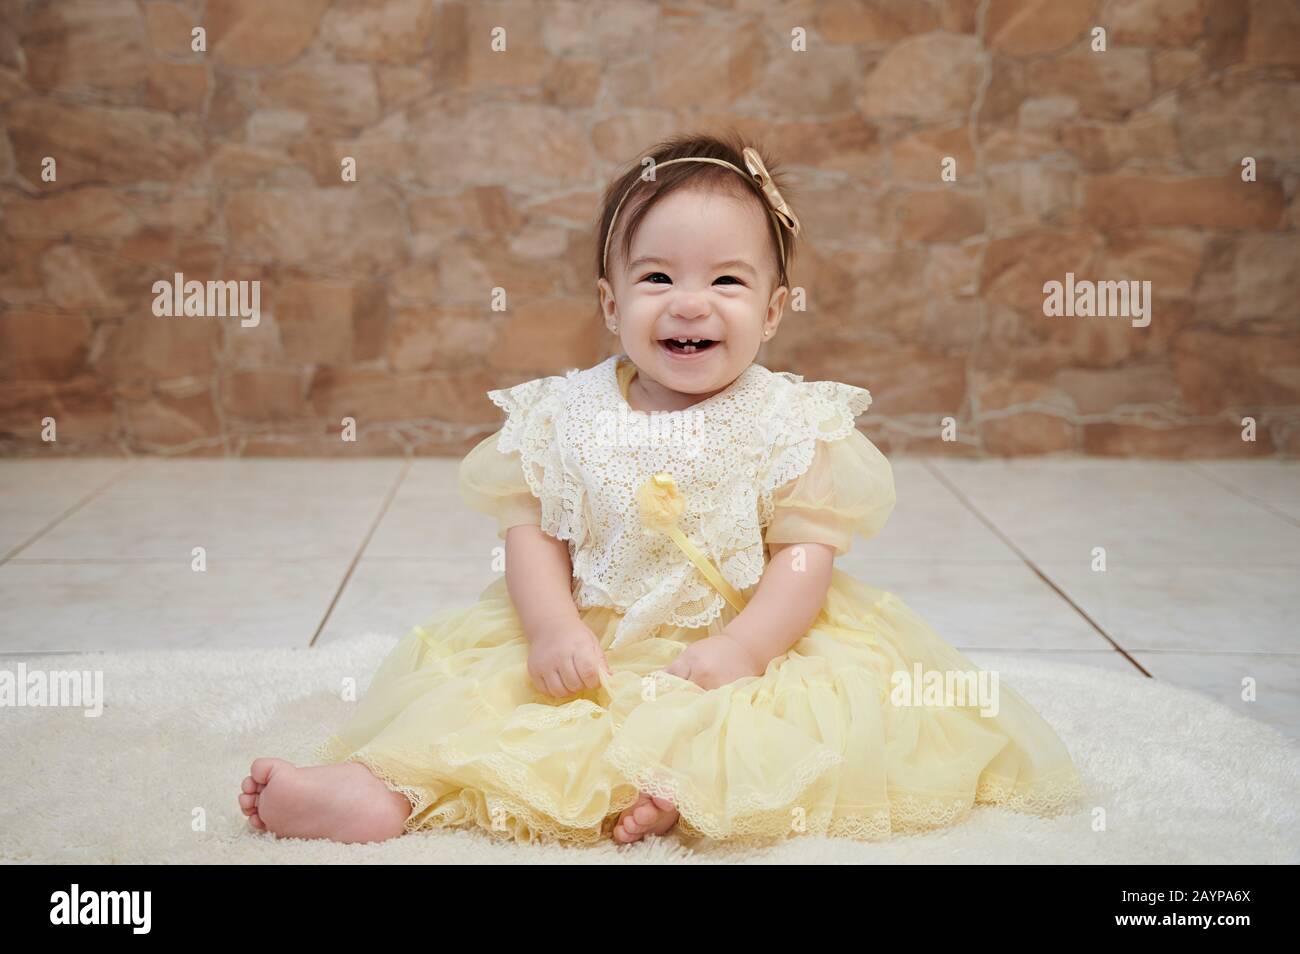 Une jolie petite fille souriante et heureuse s'asseoir sur le sol en robe jaune Banque D'Images